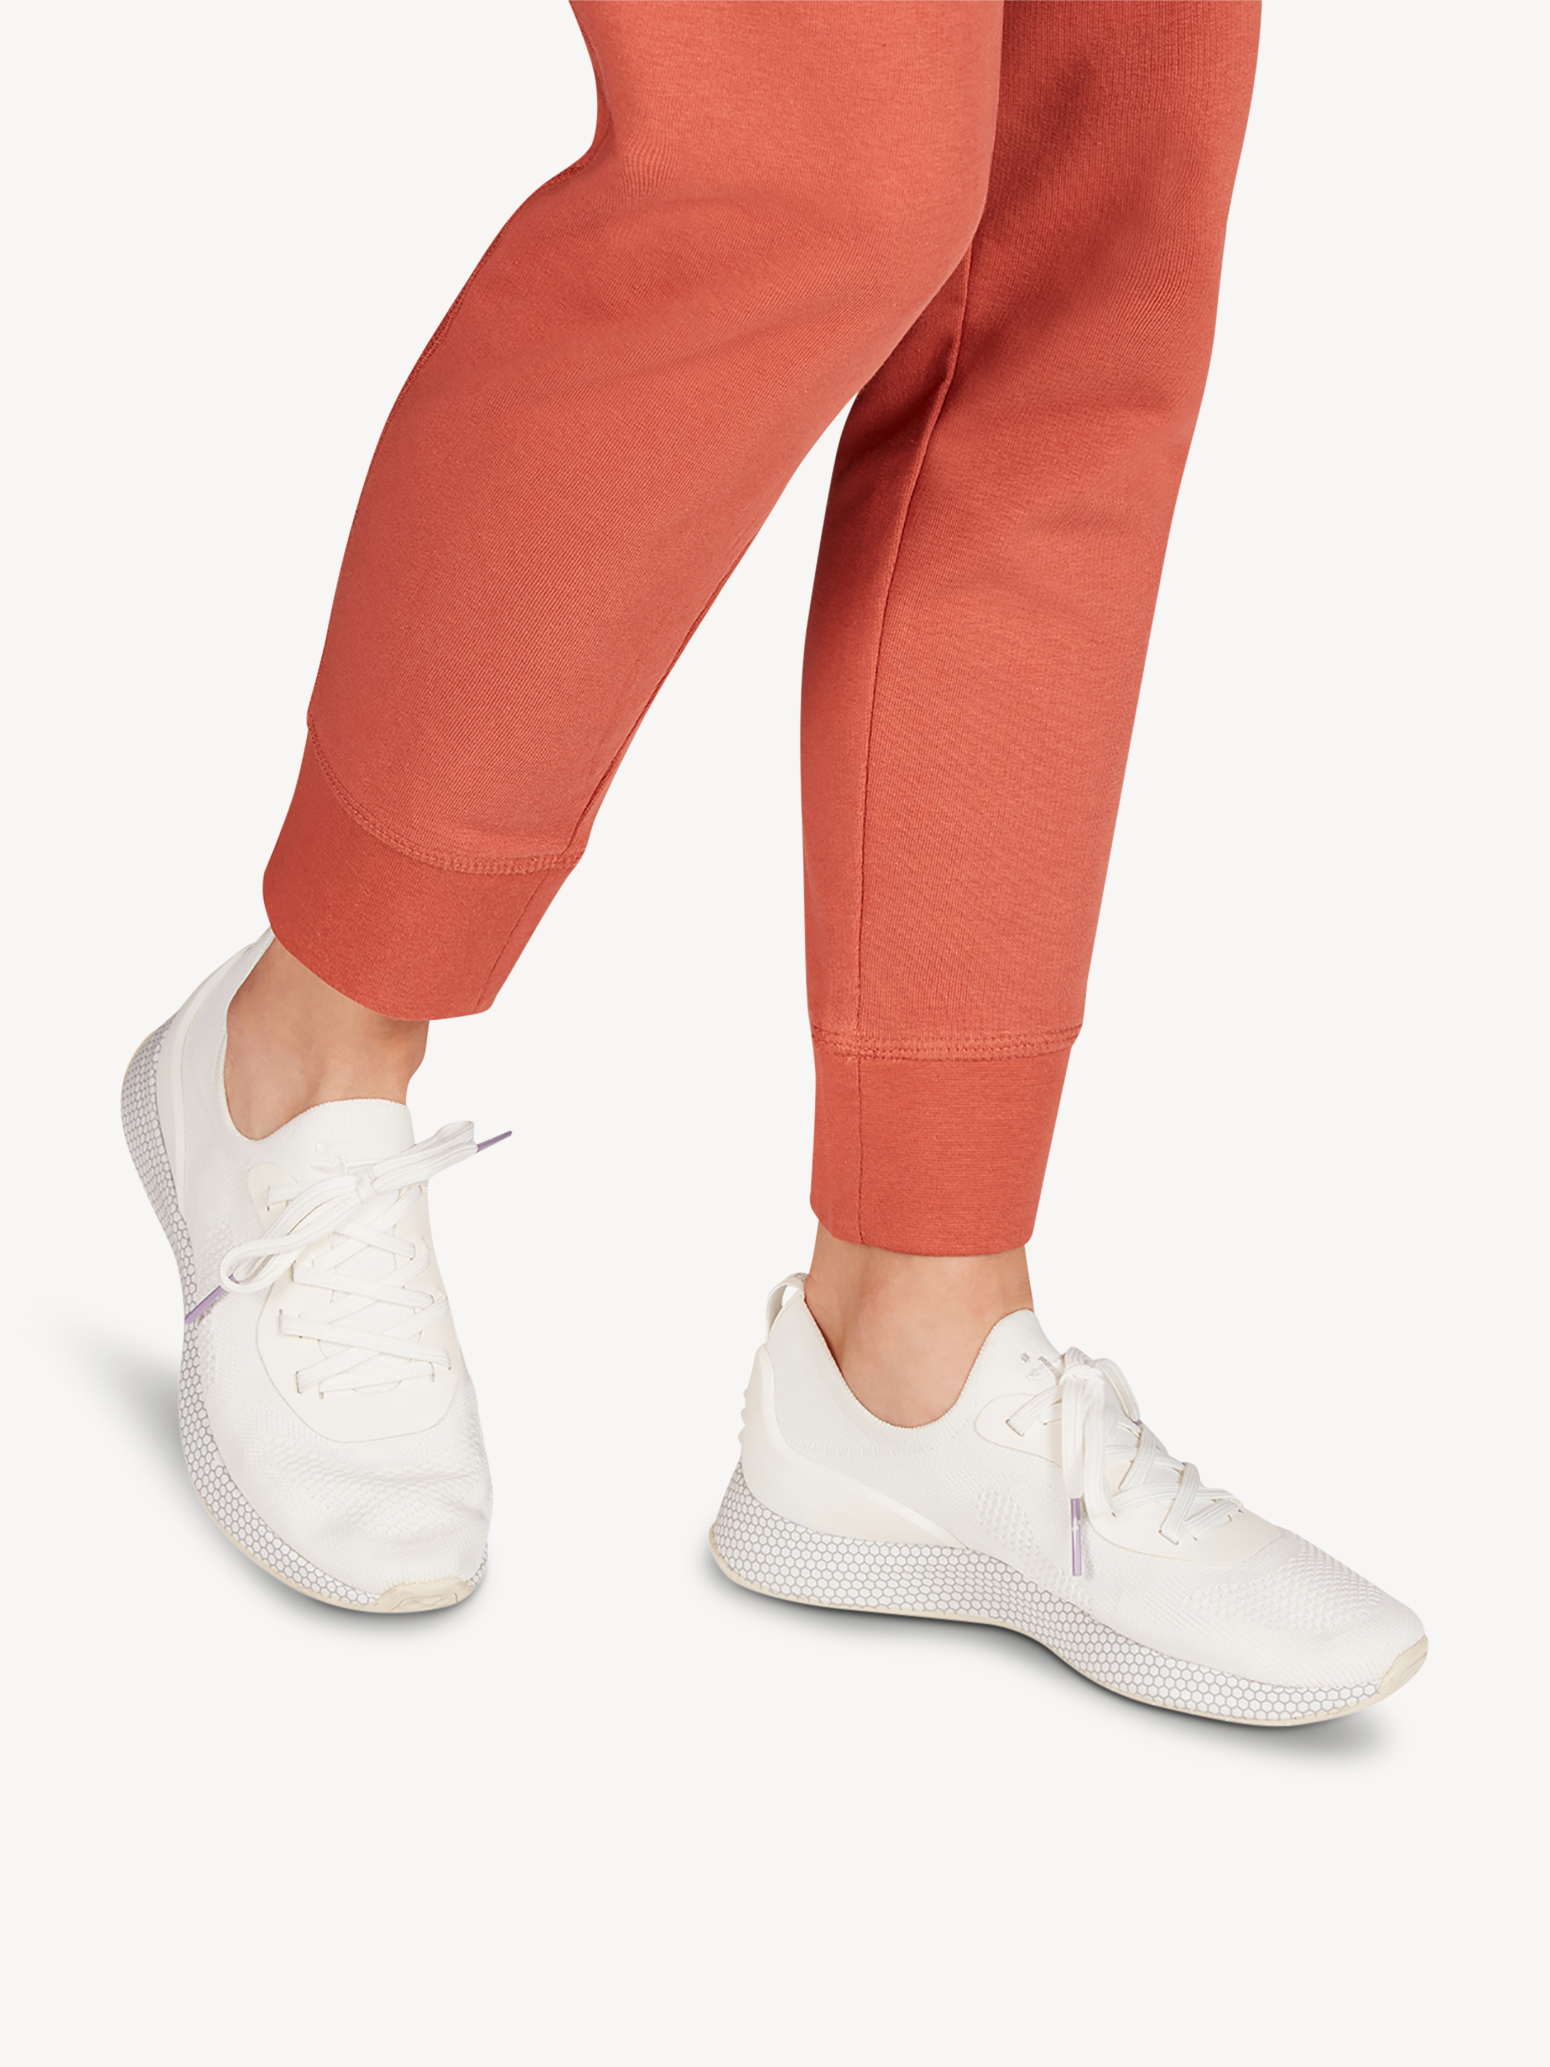 Ботинки на шнурках женские 5 AW20 (белый) - изображение №1